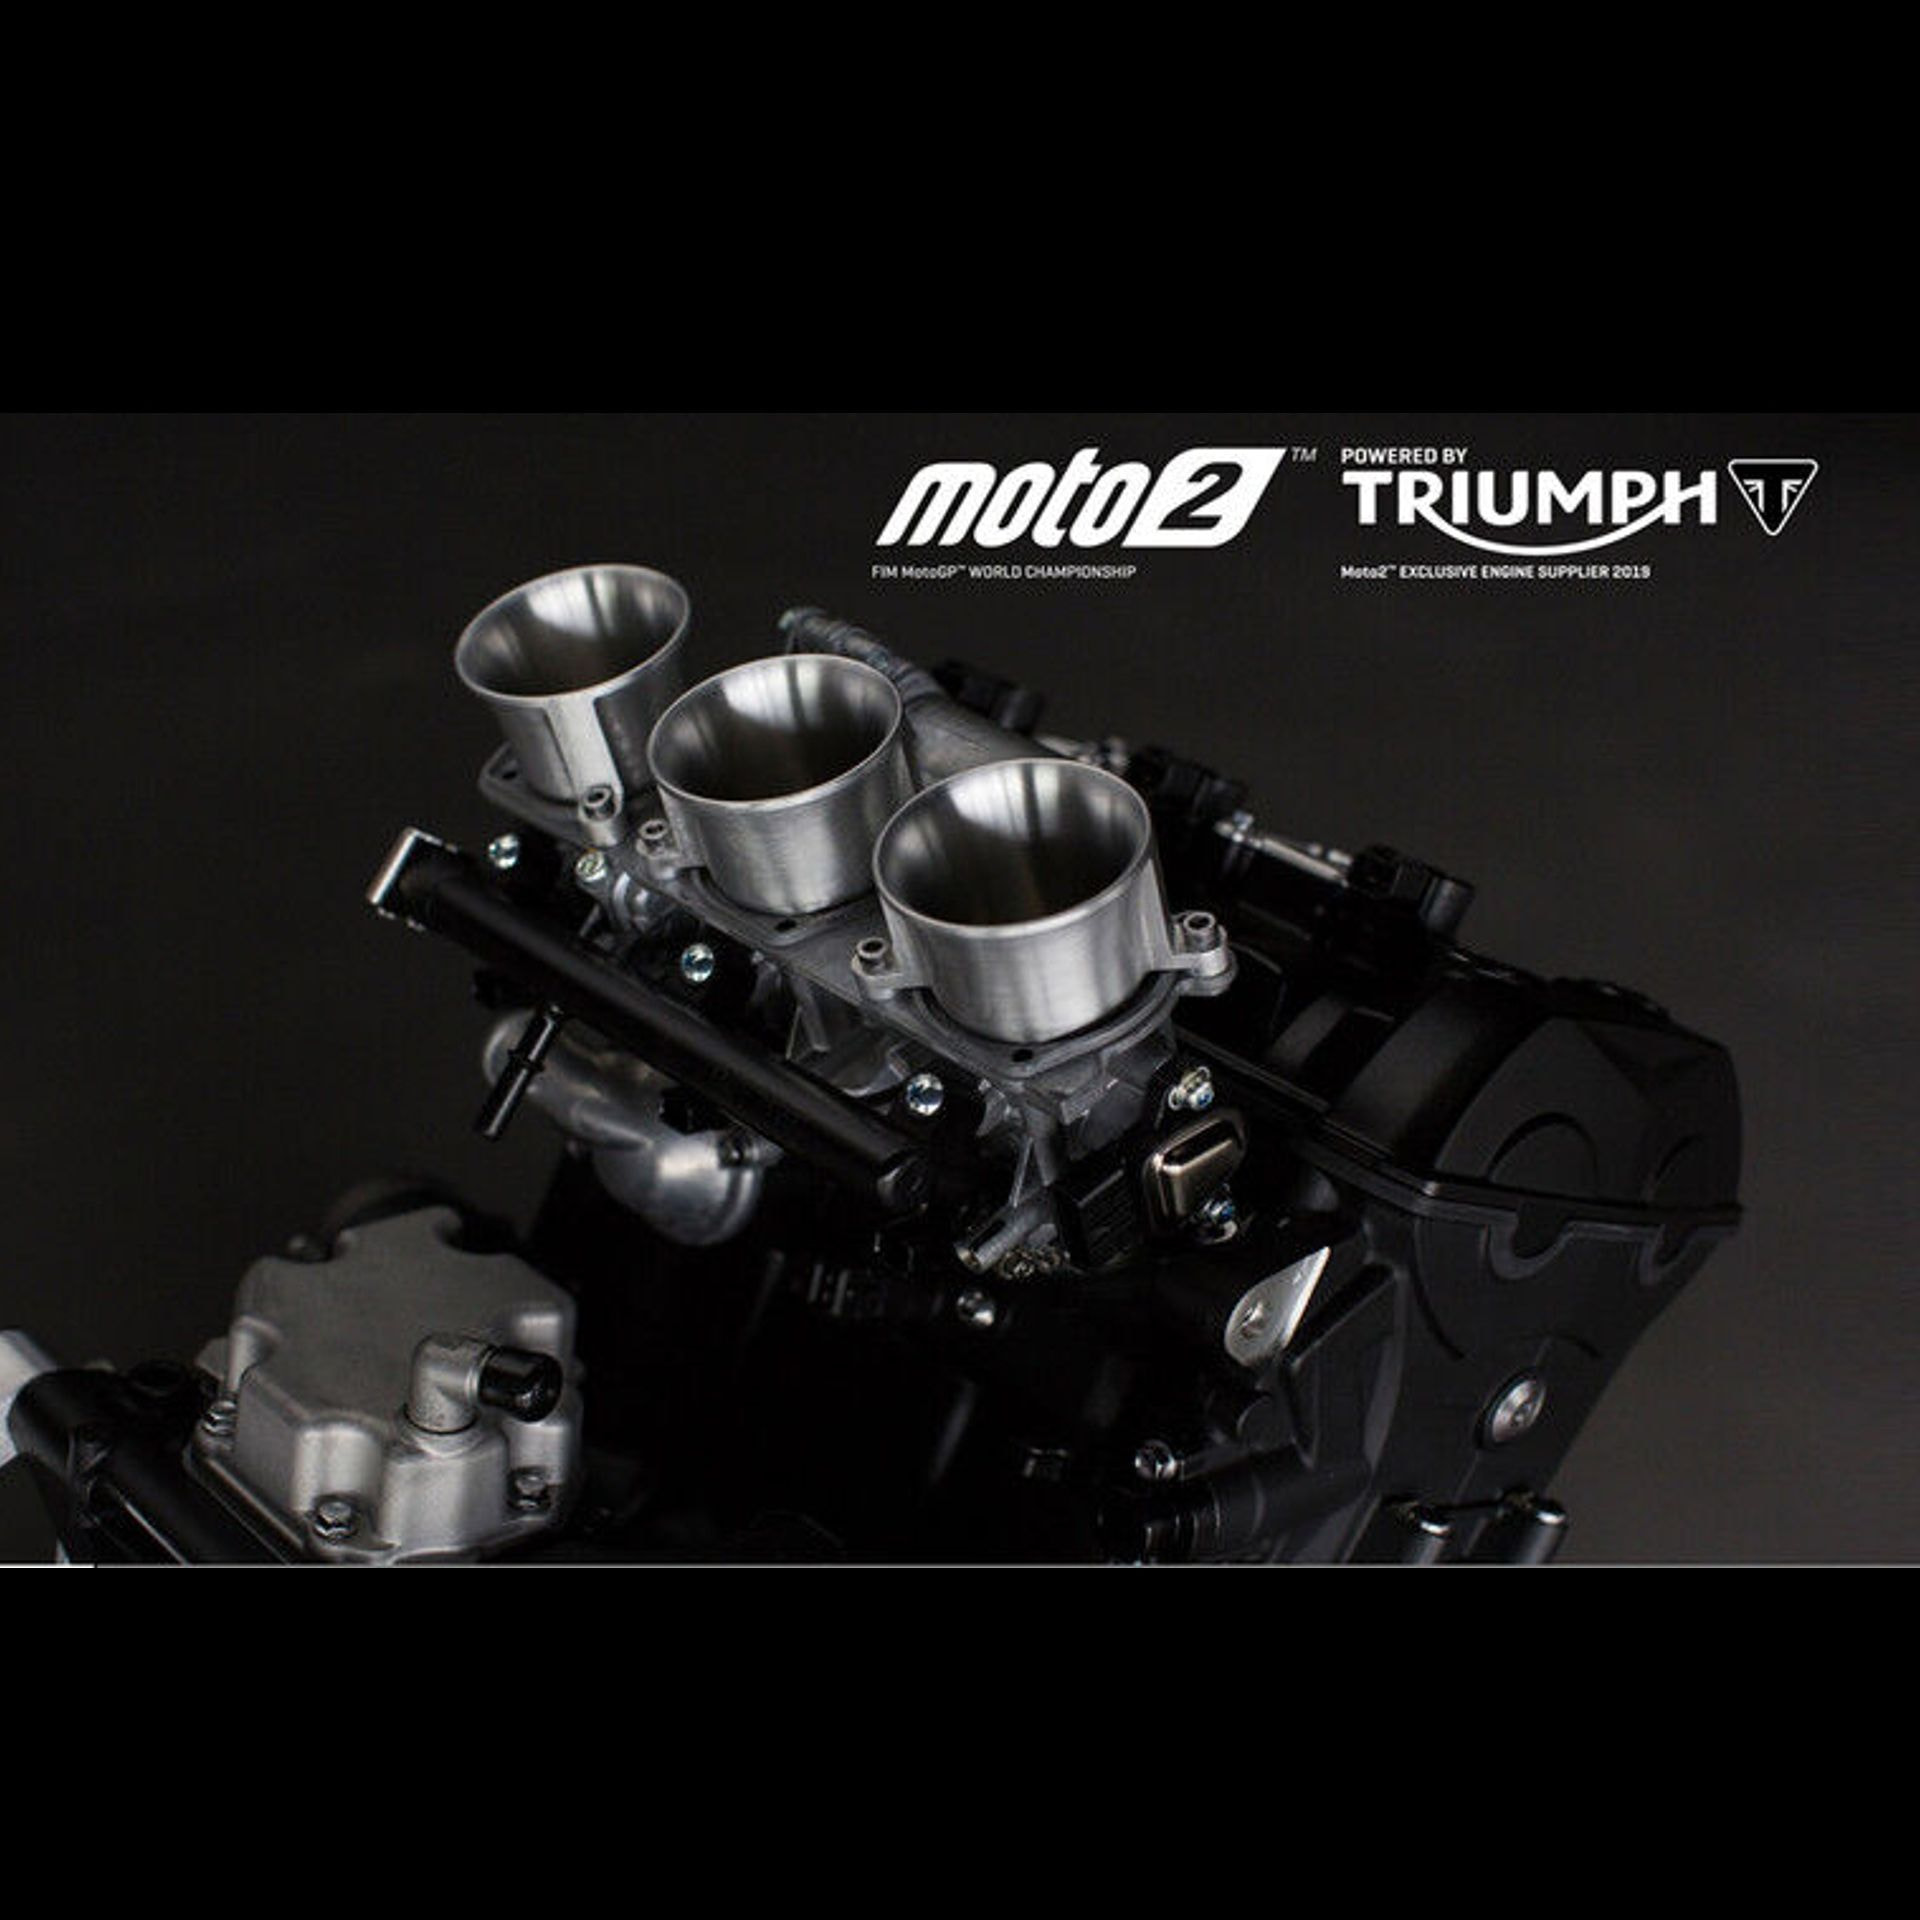 il motore Triumph per la moto 2